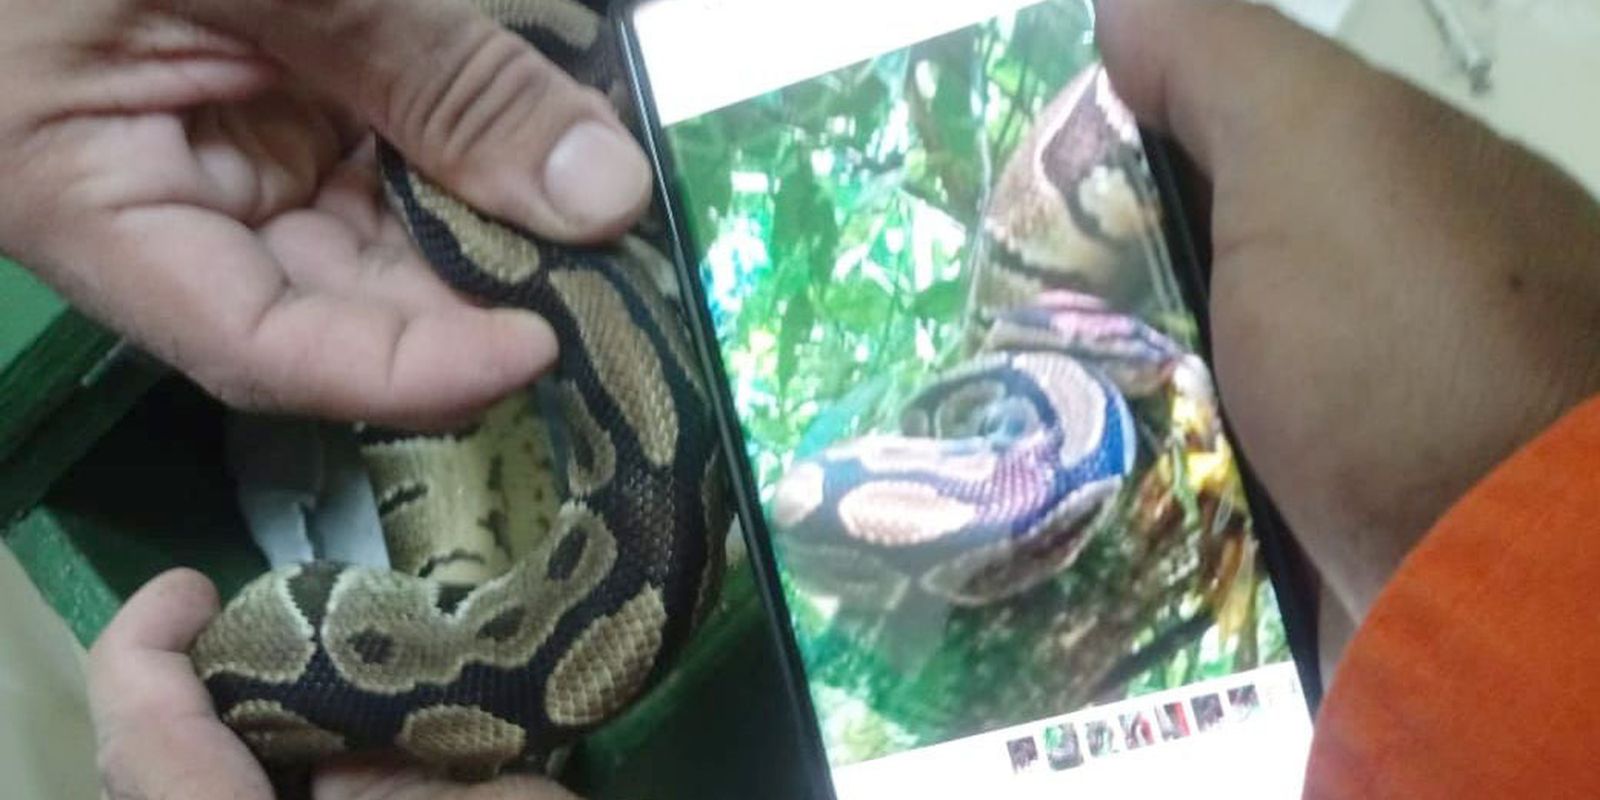 Serpente píton é retirada do Parque Nacional da Tijuca, no Rio